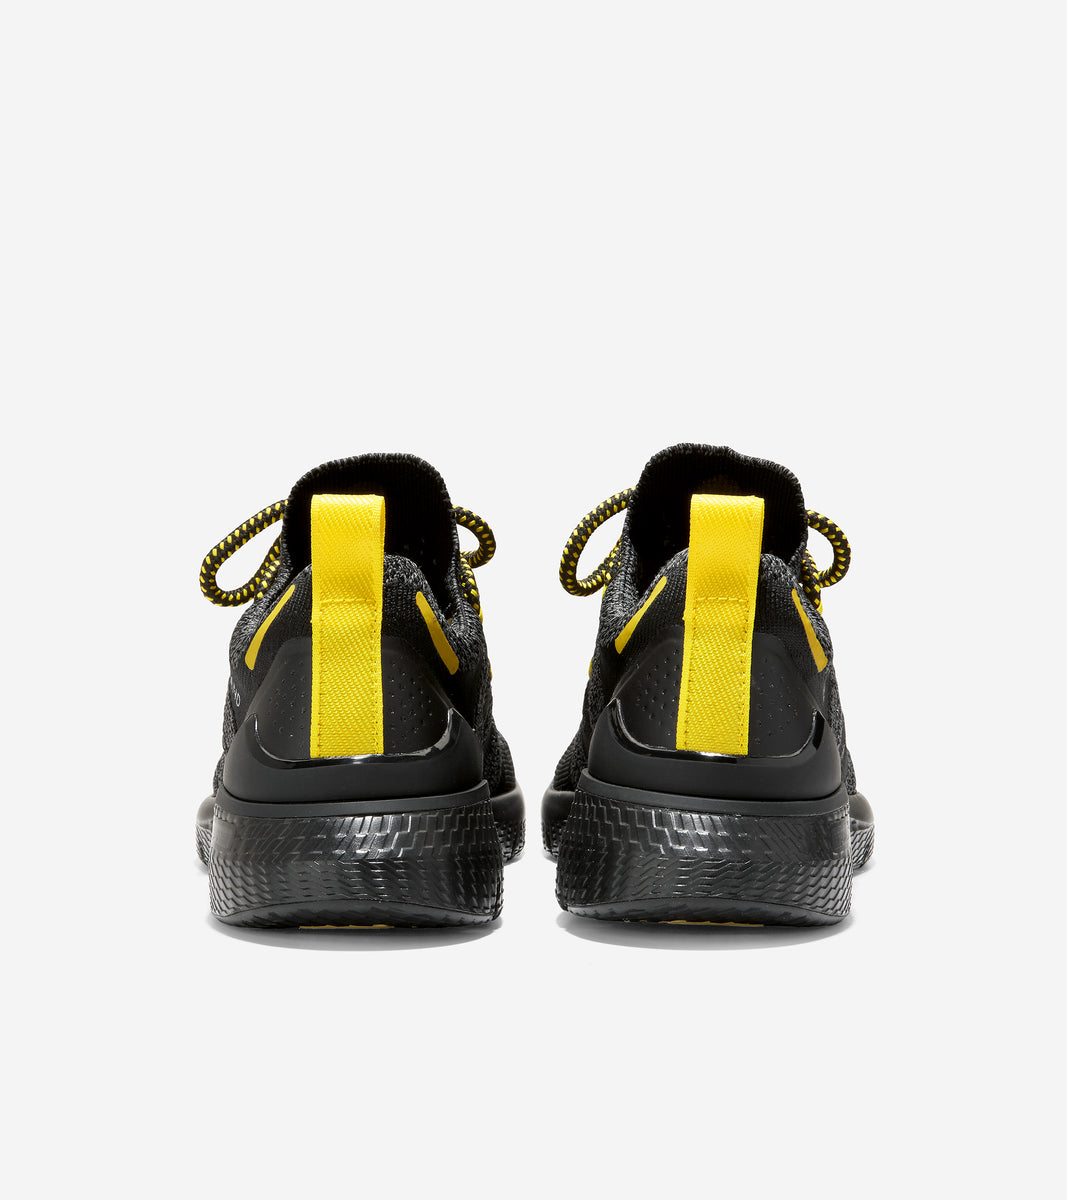 ZERØGRAND Overtake Lite Running Shoe-C34245-Black-Cyber Yellow